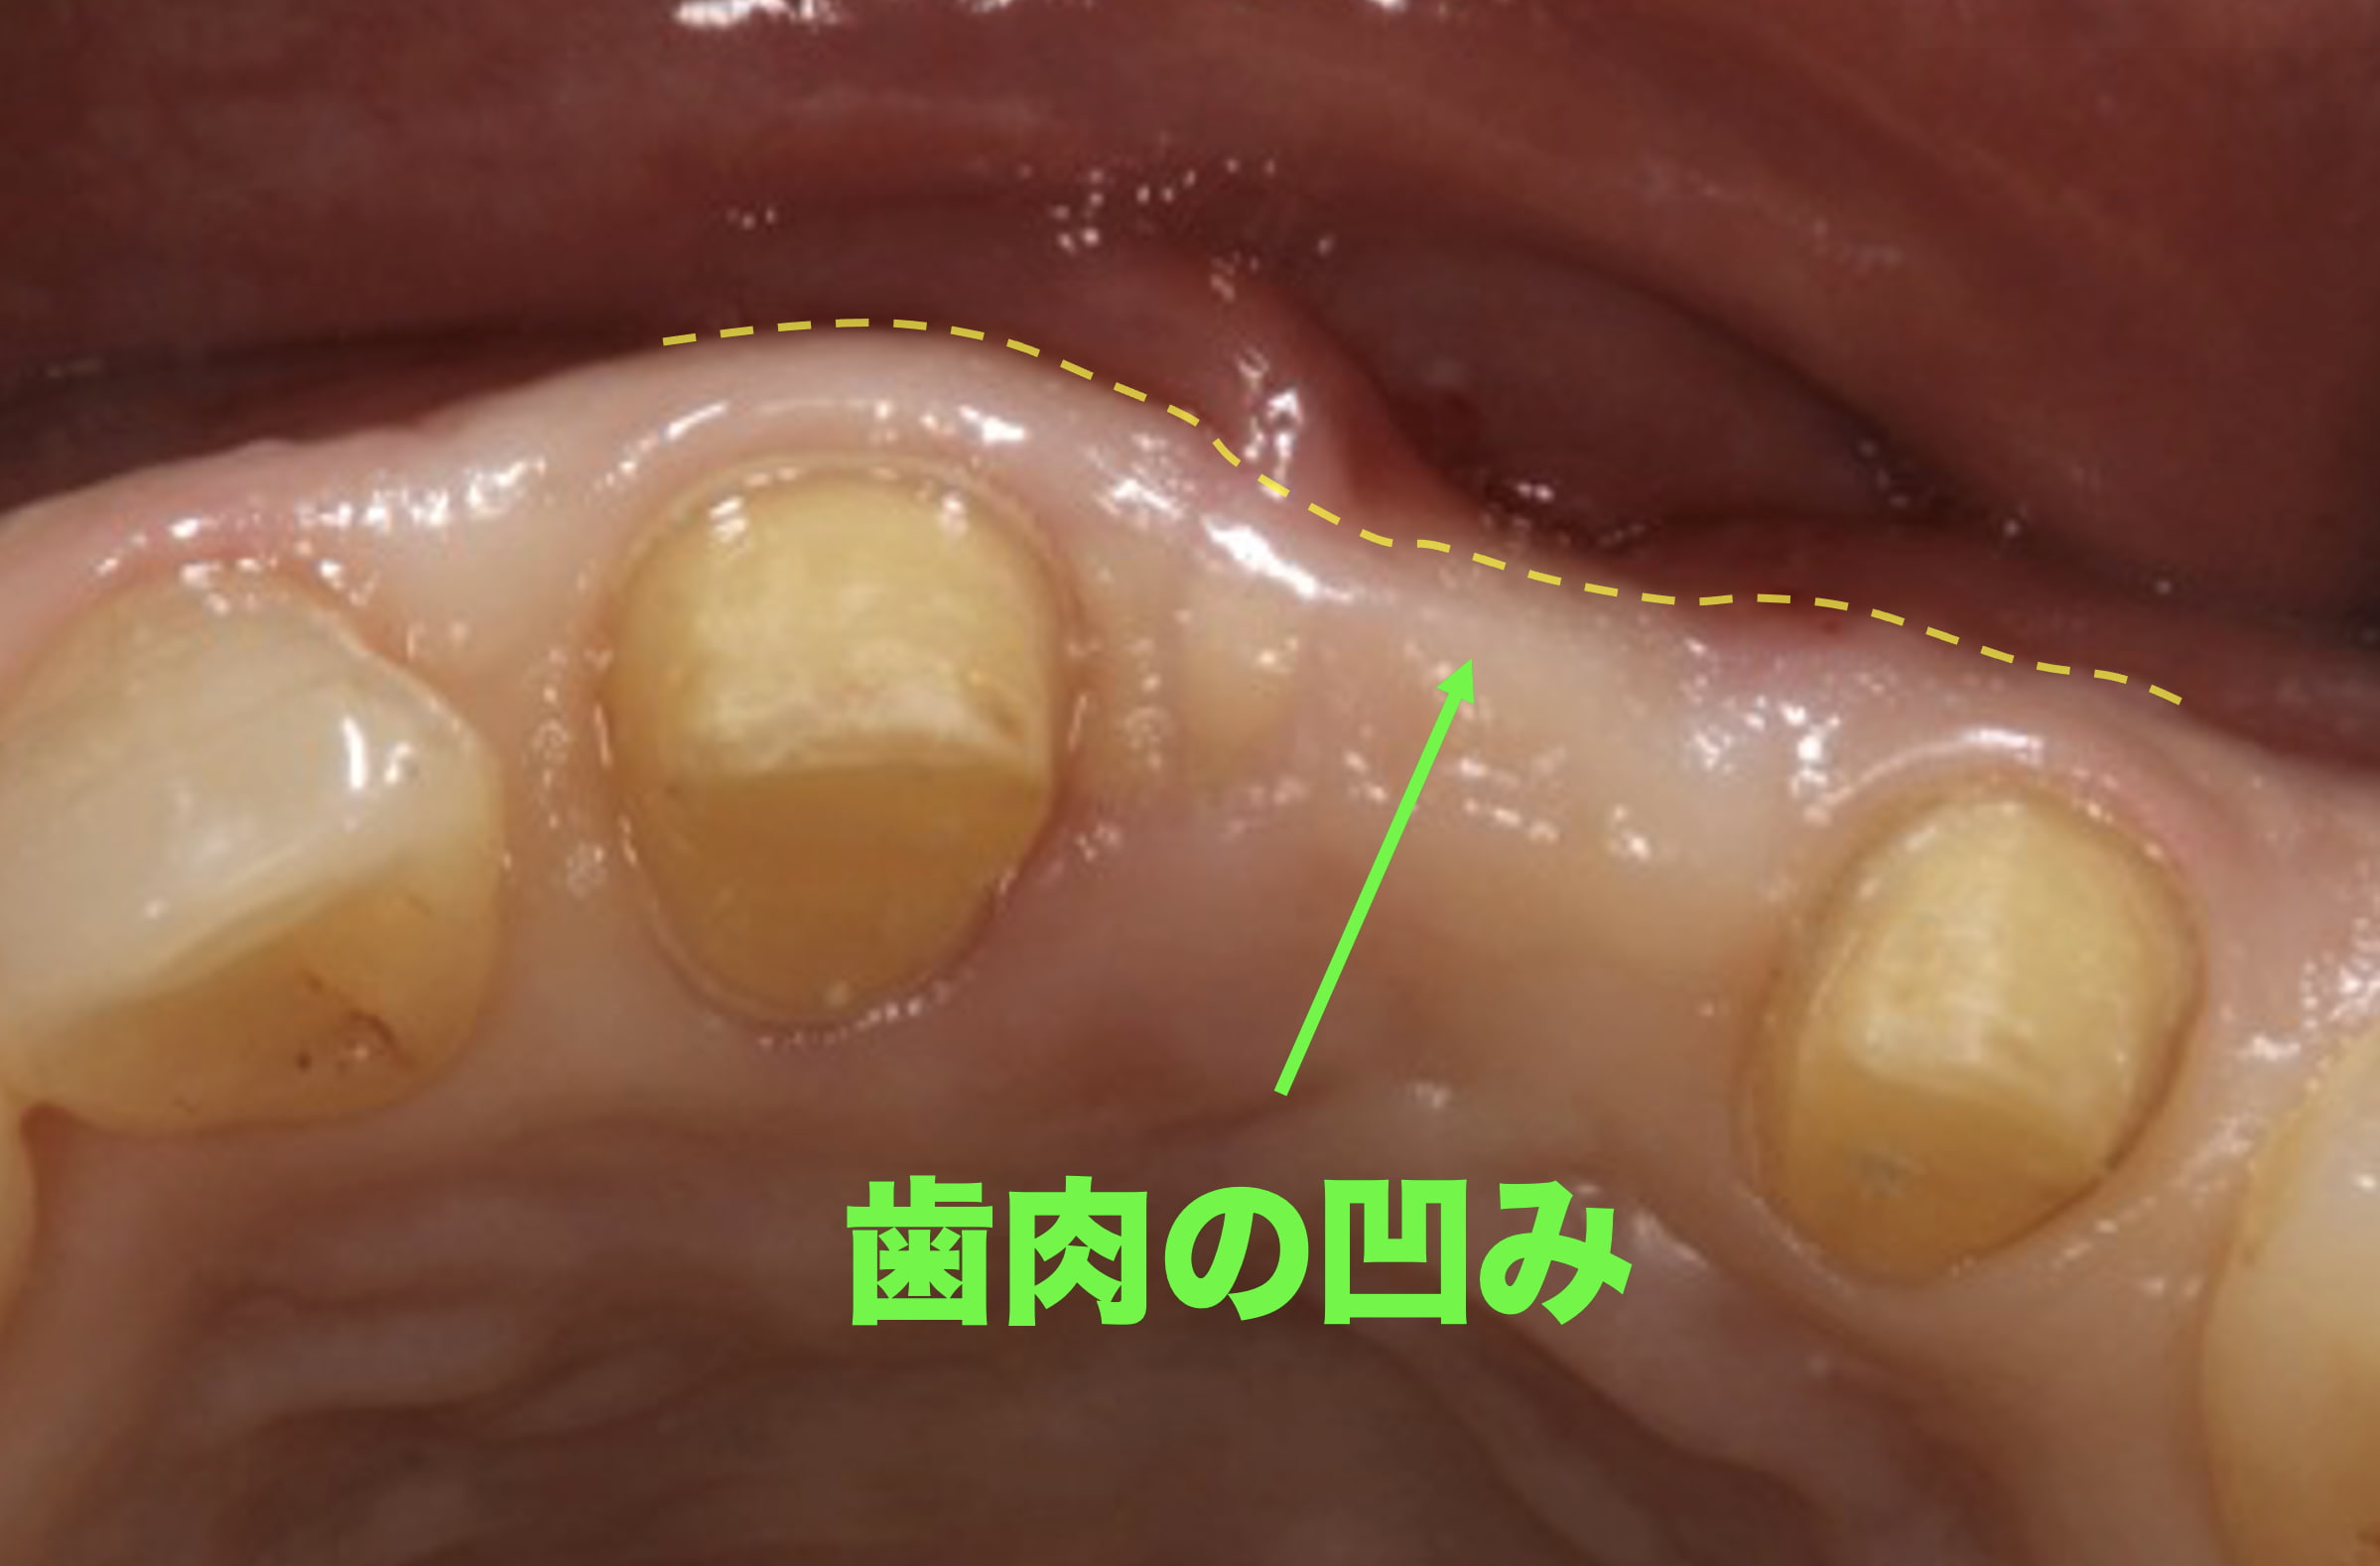 歯茎の凹みと溜まった汚れにより歯周病になってしまった歯茎の症例写真